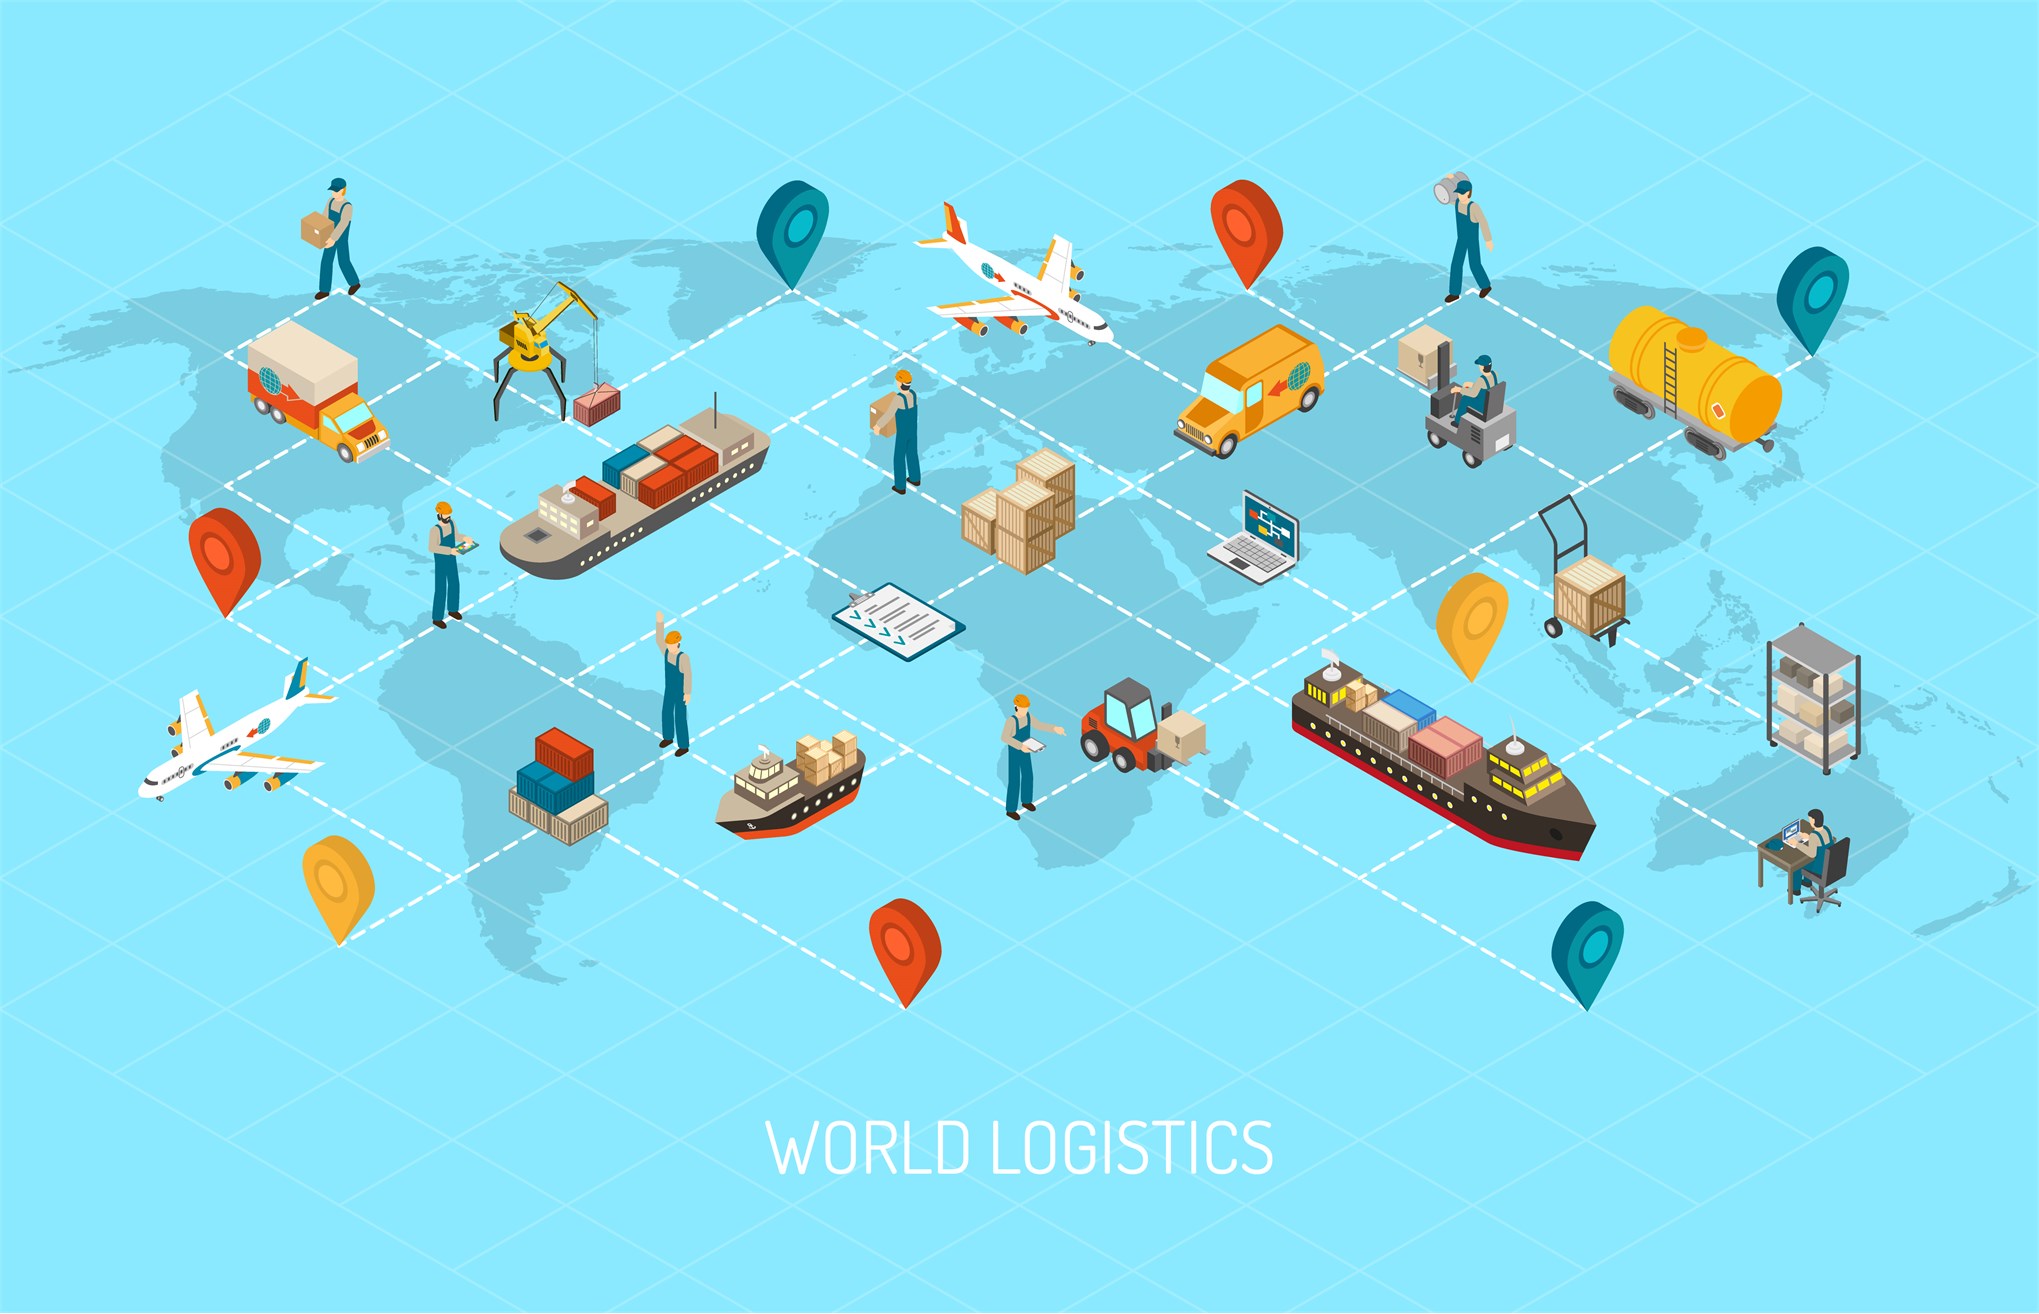 Cử nhân ngành Logistics và Quản lý chuỗi cung ứng: nghề nghiệp với tương lai rộng mở